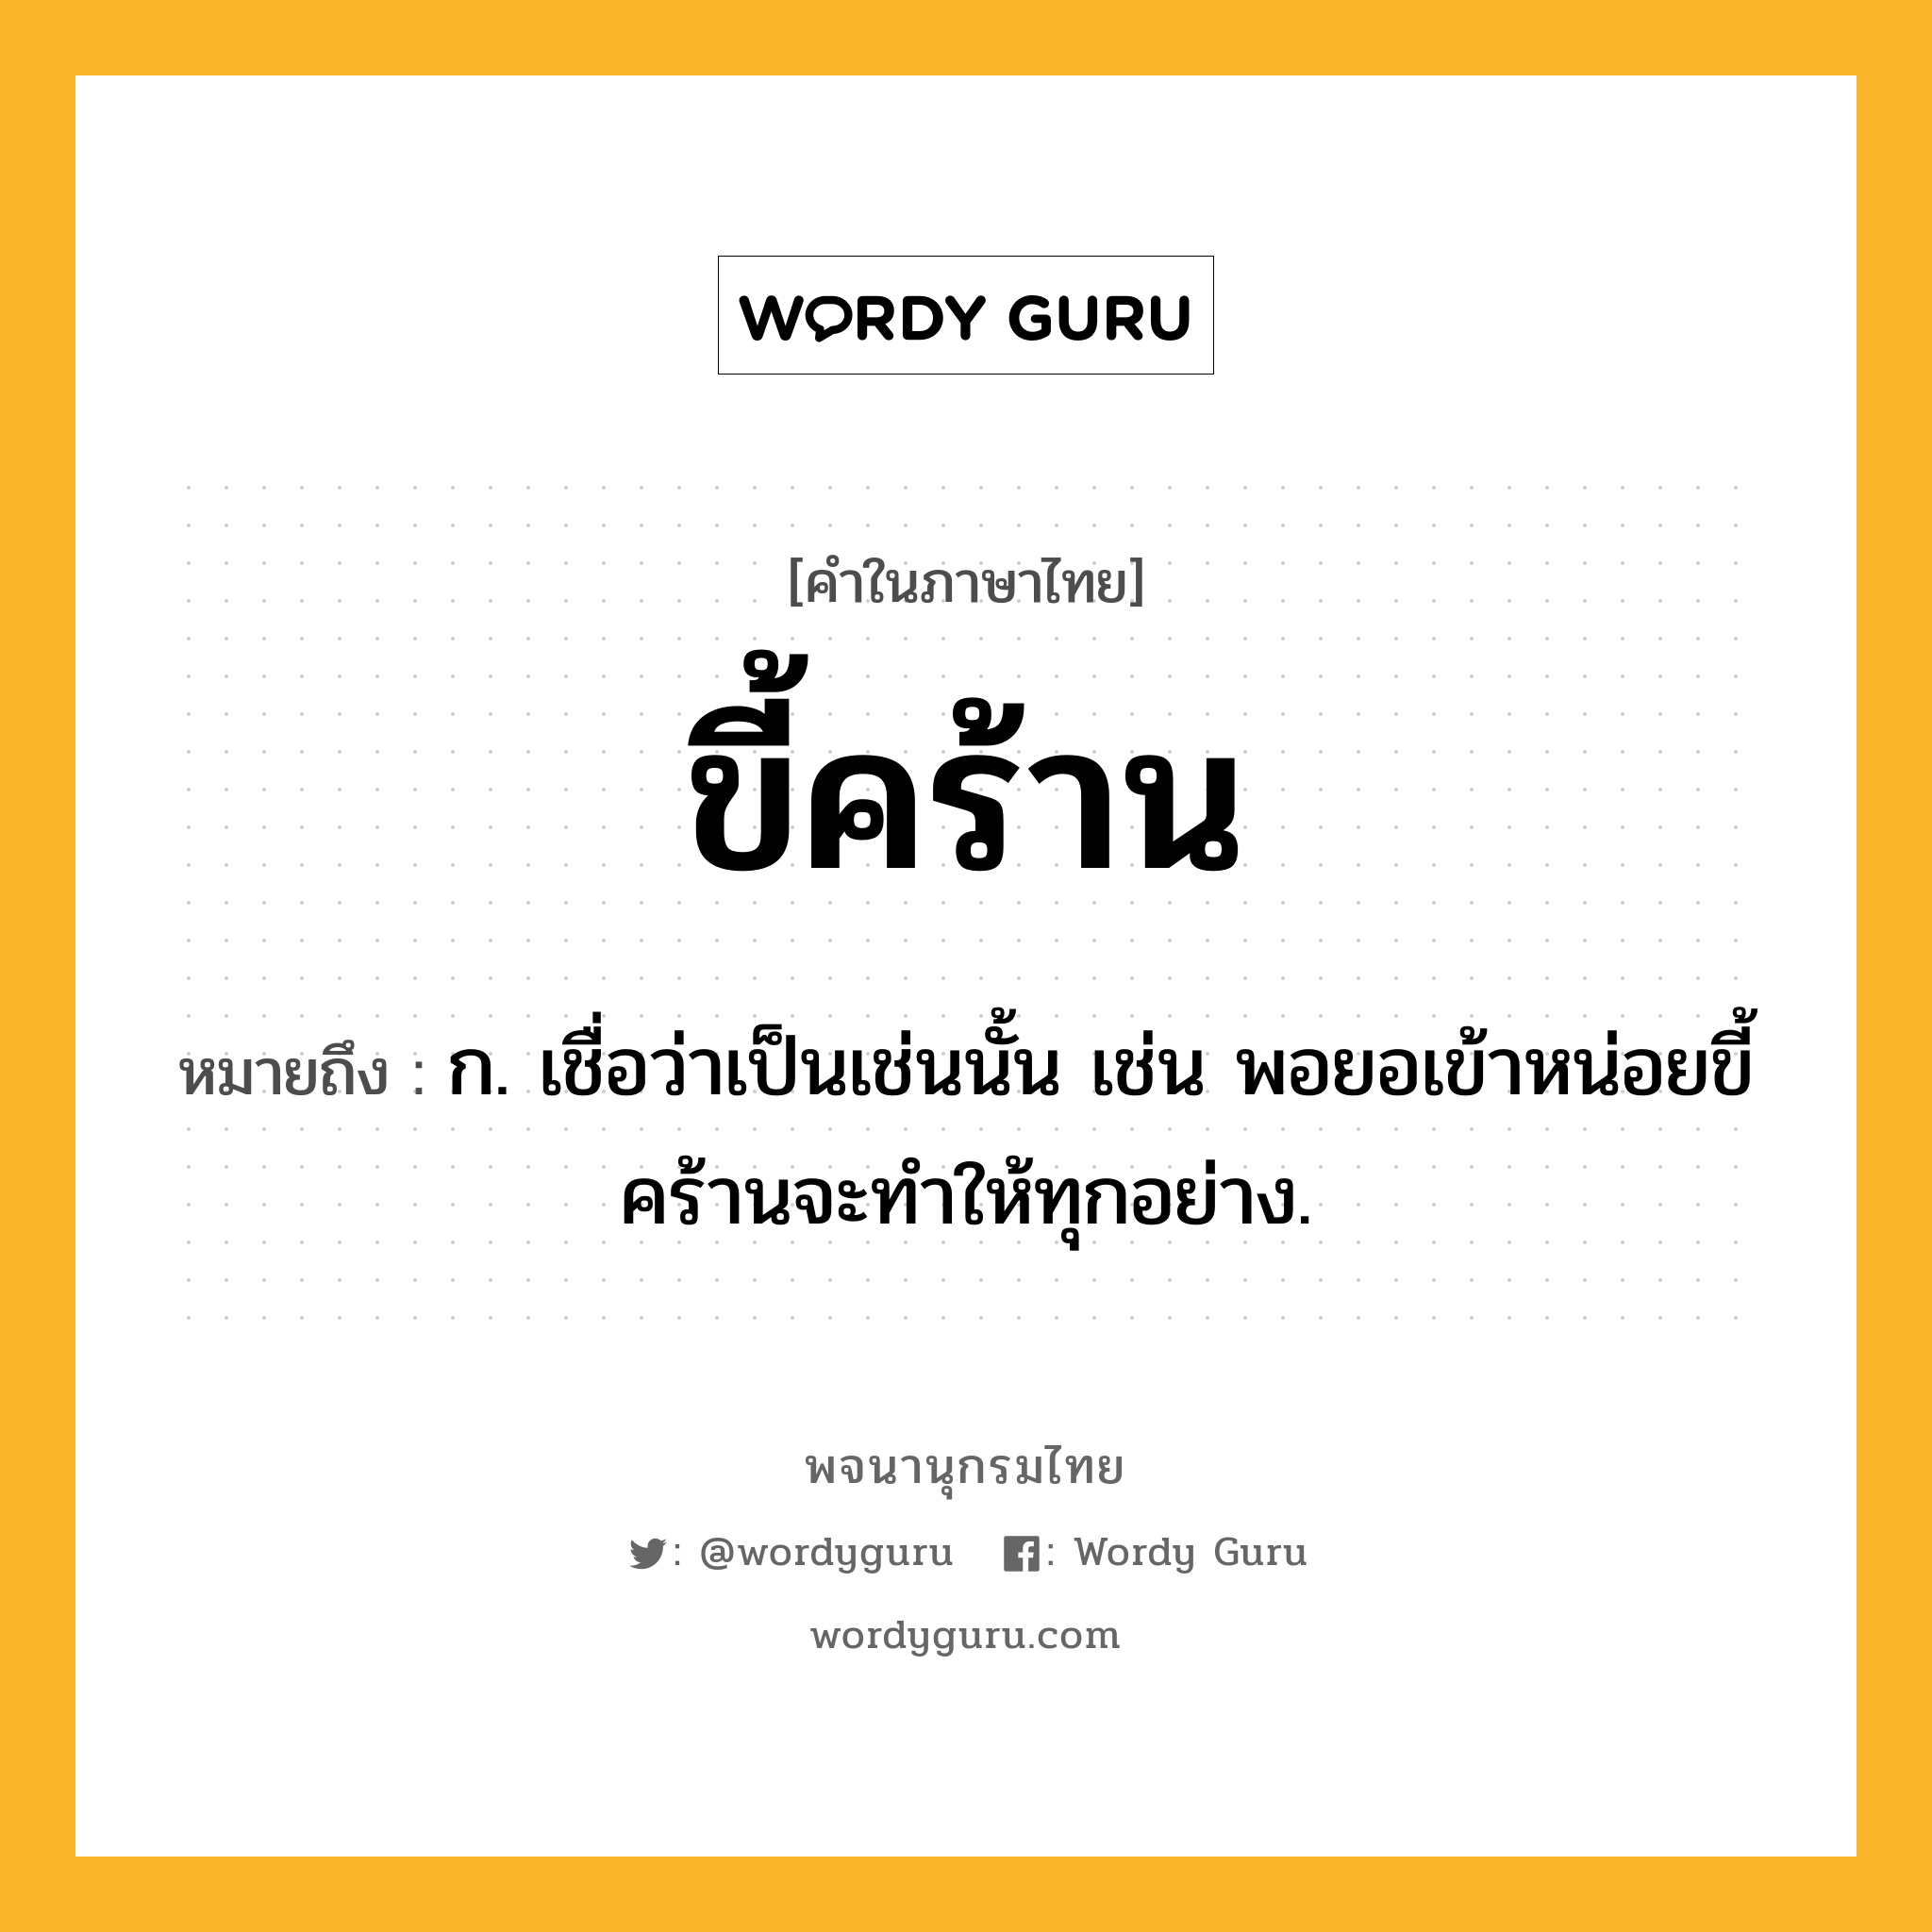 ขี้คร้าน ความหมาย หมายถึงอะไร?, คำในภาษาไทย ขี้คร้าน หมายถึง ก. เชื่อว่าเป็นเช่นนั้น เช่น พอยอเข้าหน่อยขี้คร้านจะทำให้ทุกอย่าง.